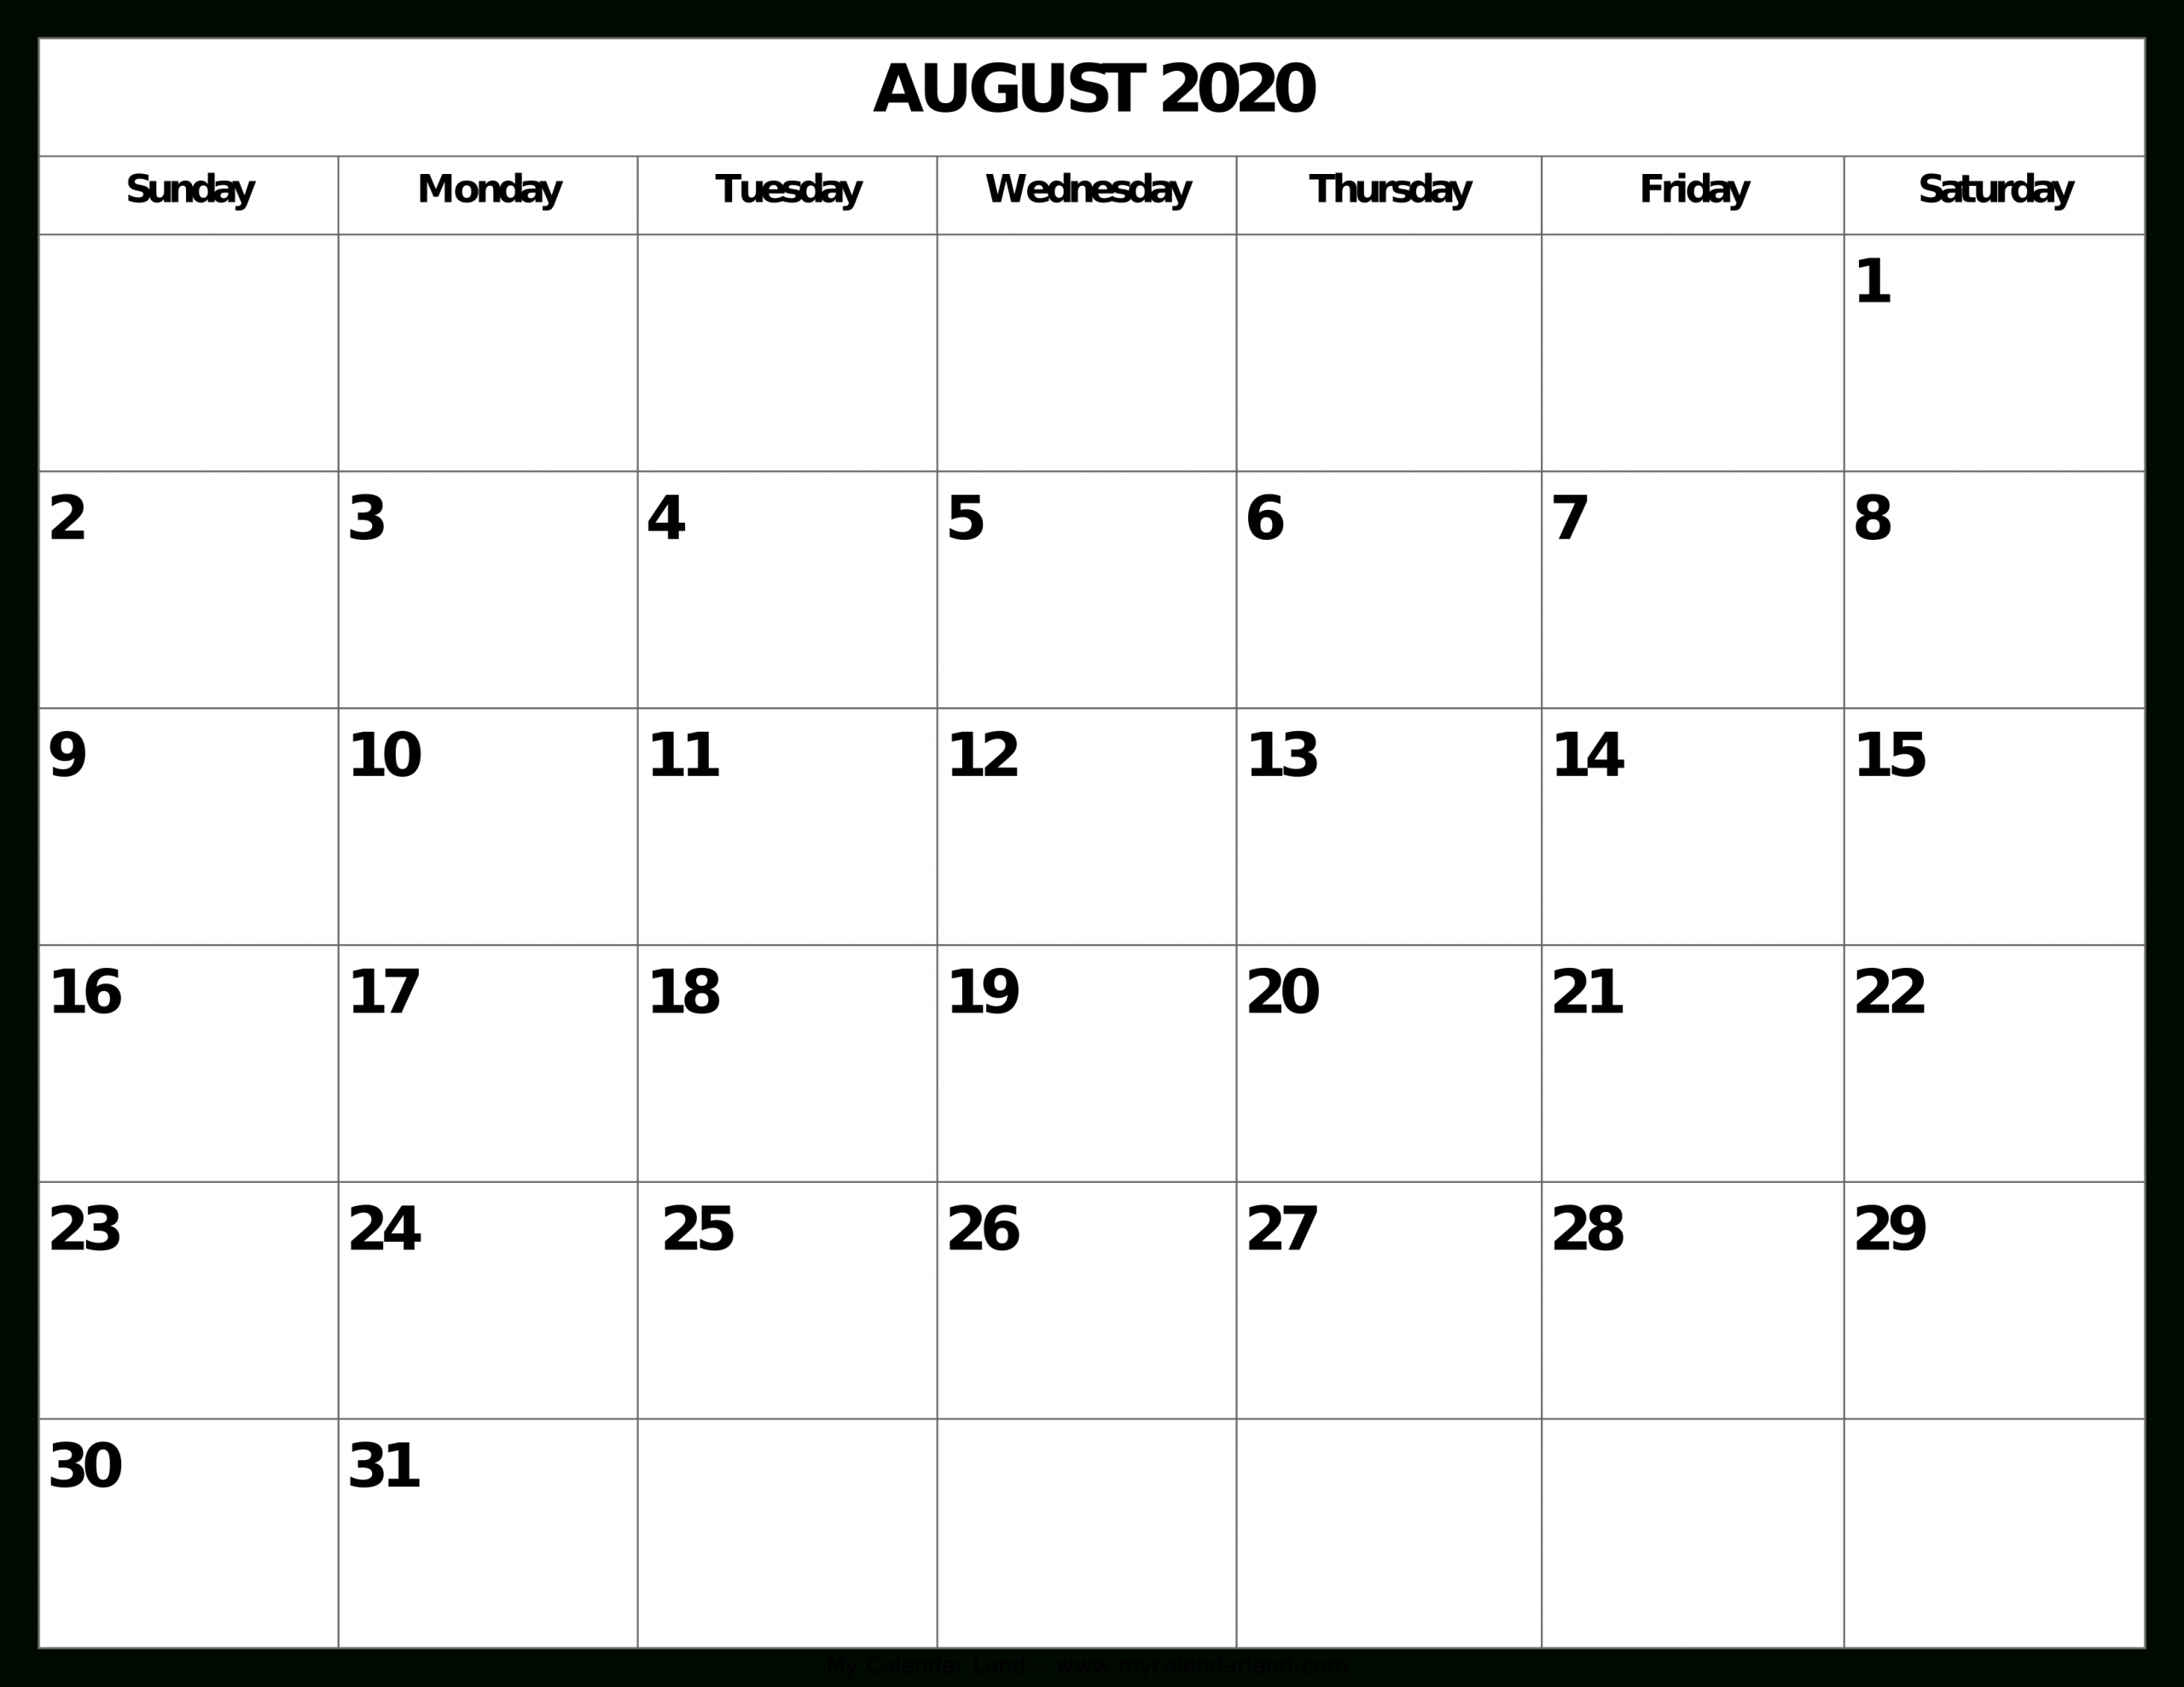 August 2020 Calendar - My Calendar Land